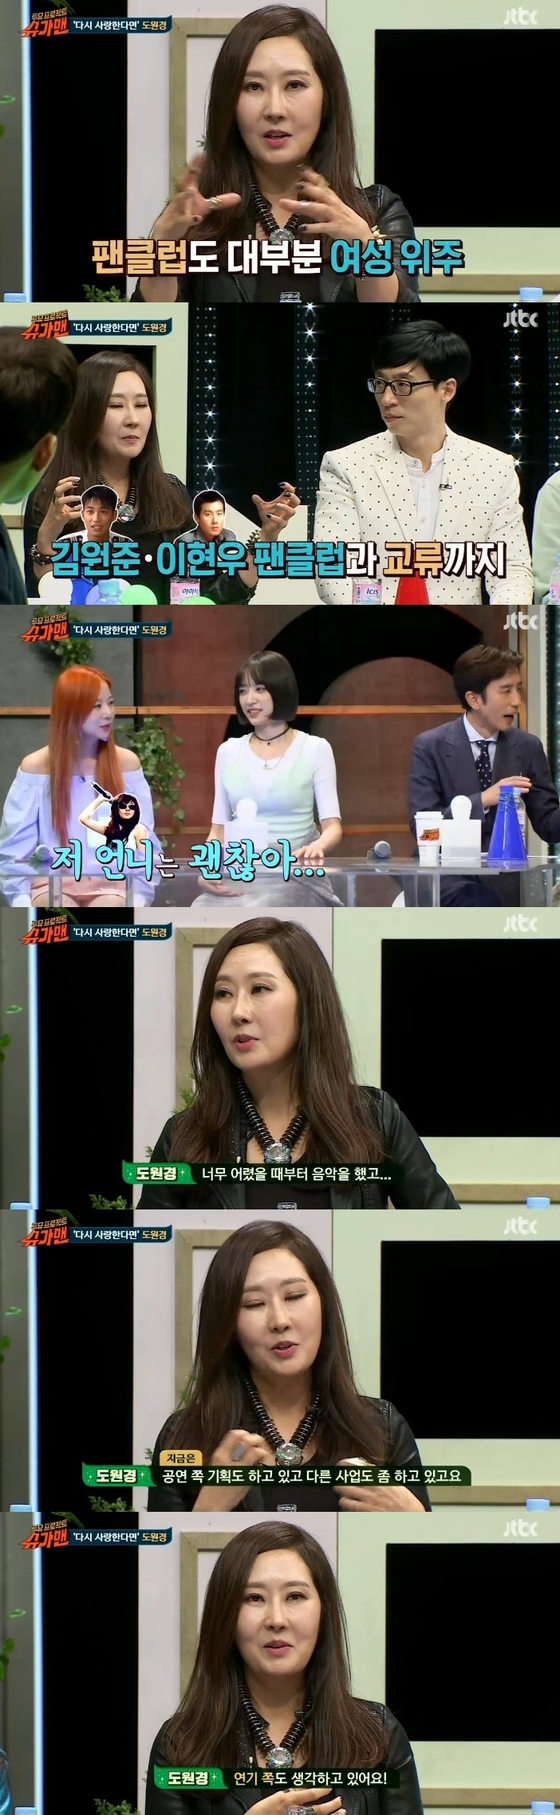 26일 밤 10시50분 JTBC '투유 프로젝트-슈가맨'이 방송됐다. © News1star / JTBC '투유 프로젝트-슈가맨' 캡처